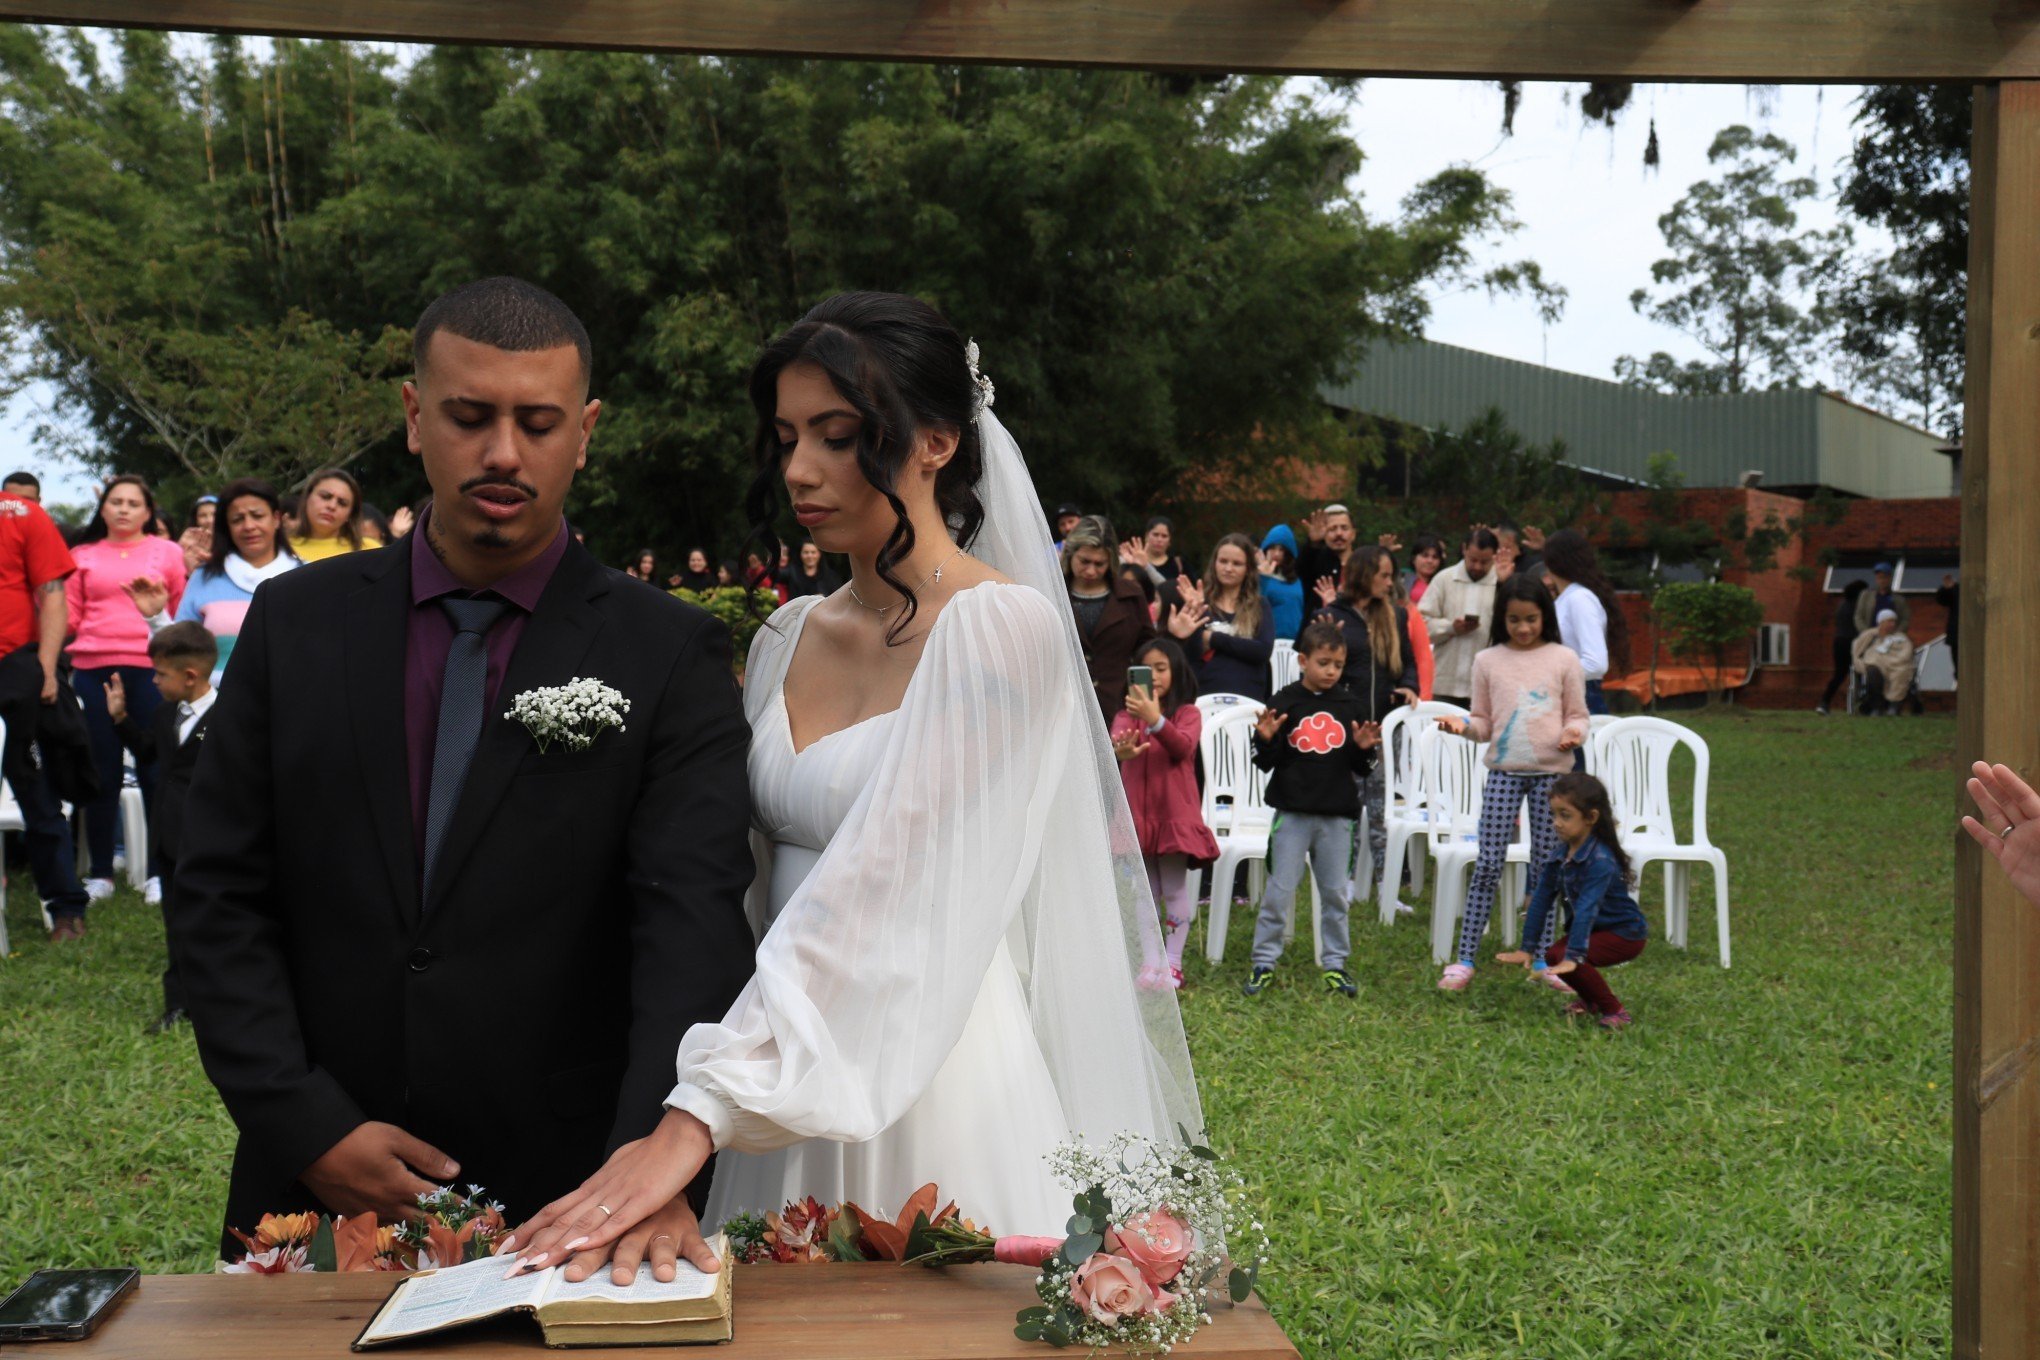 "Além do que eu sonhava": Casal celebra união em casamento promovido em abrigo de Canoas